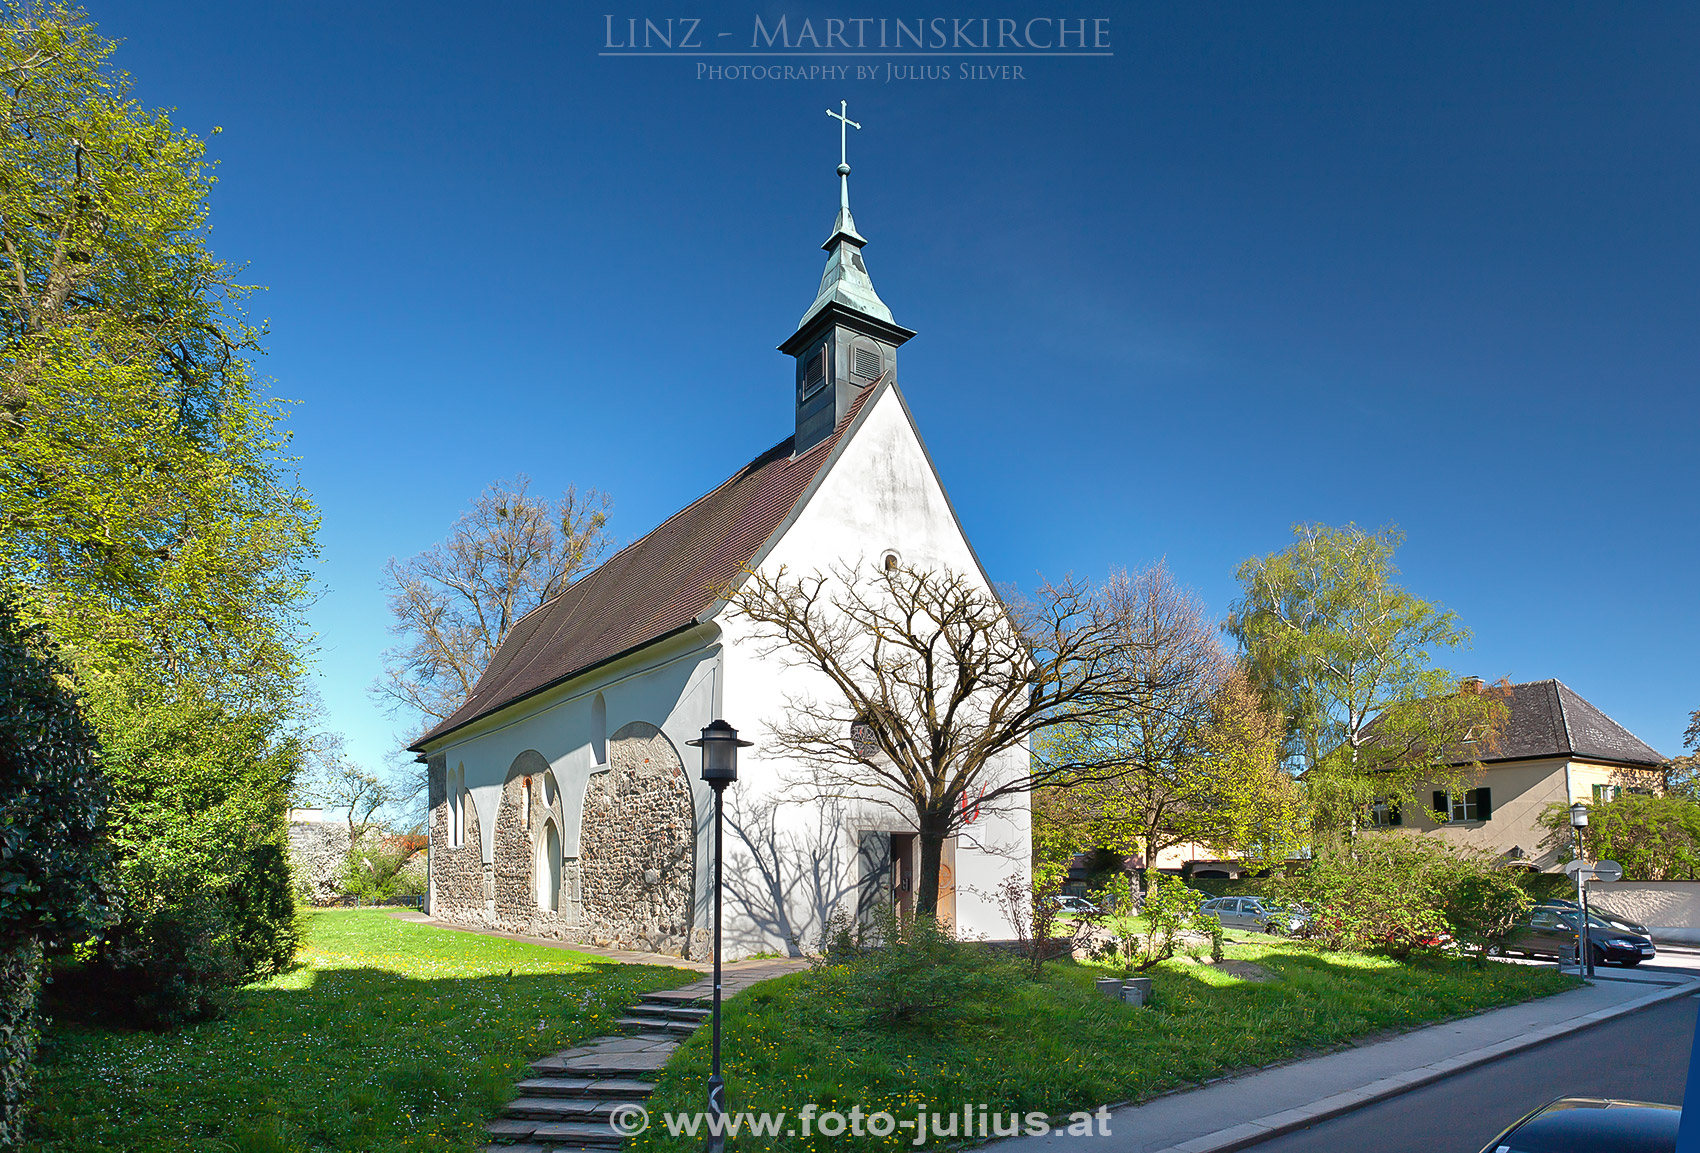 linz055a_Linz_Martinskirche.jpg, 917kB